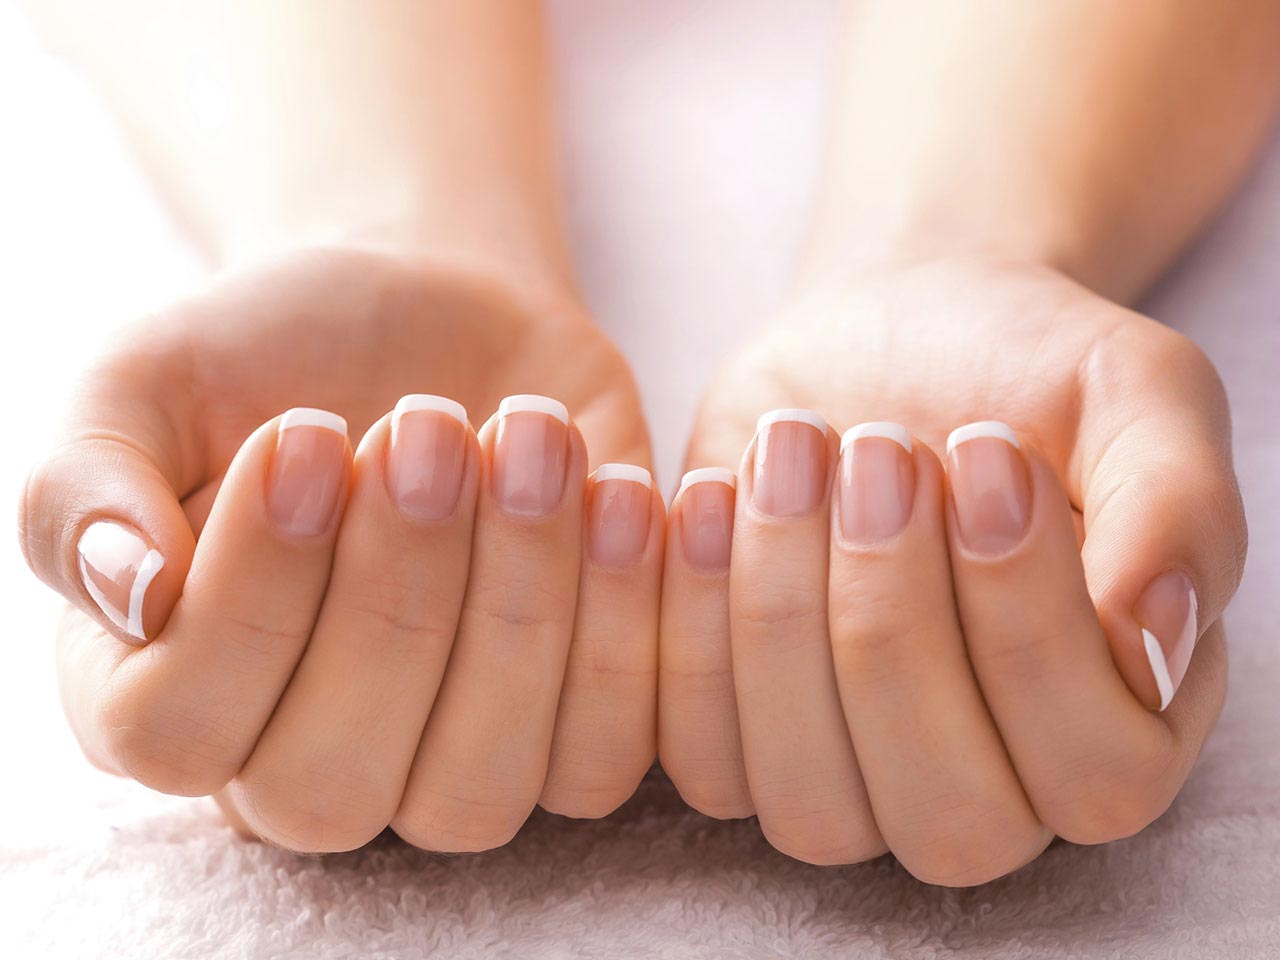 Nail health: white nails, ridged nails, white marks & more - Saga